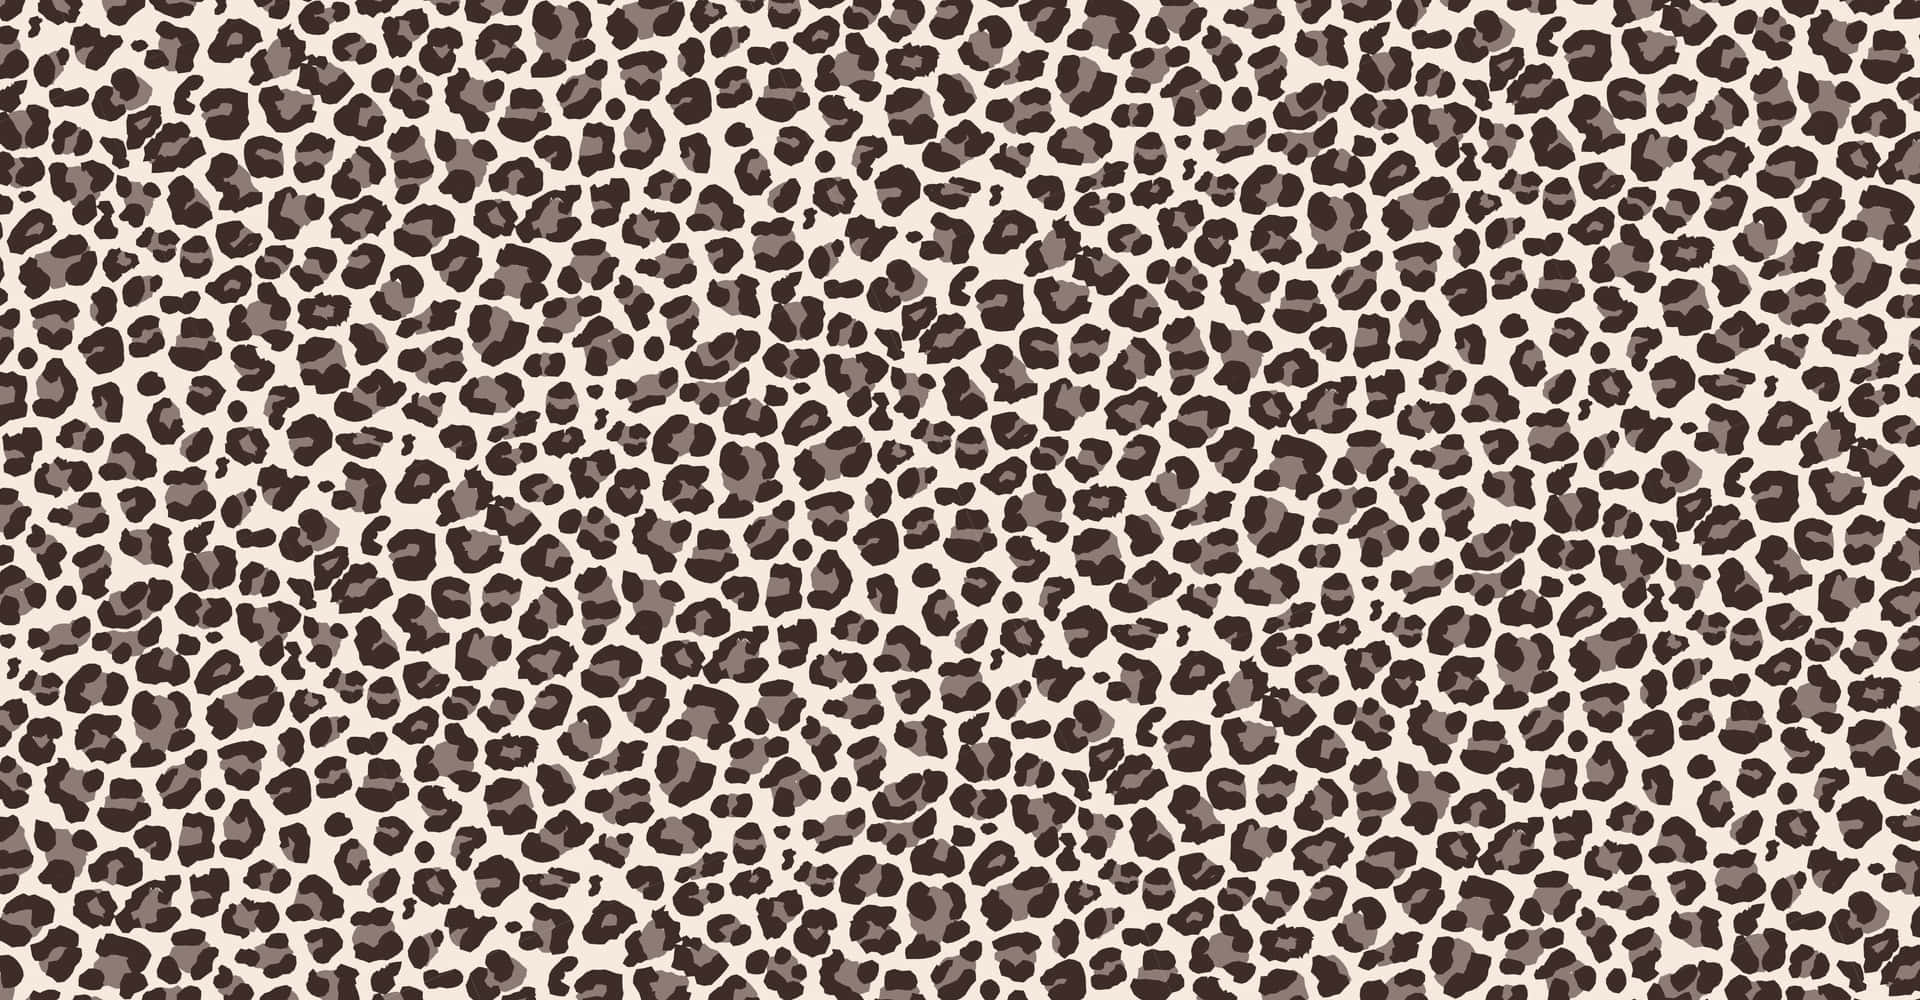 Light Brown Aesthetic Cute Cheetah Print Wallpaper